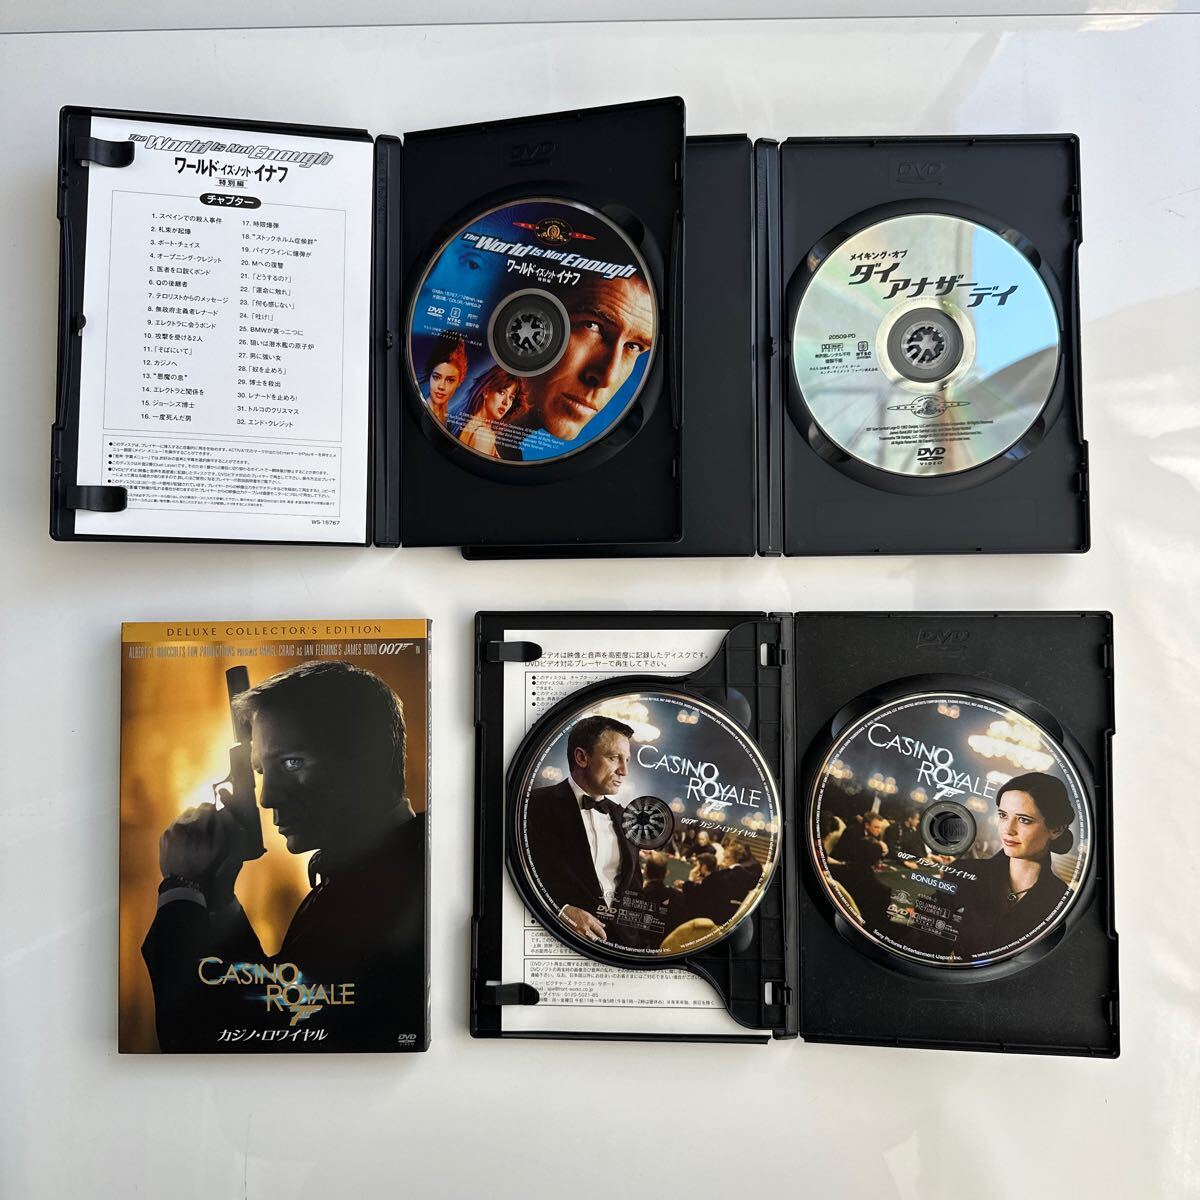 DVD 映画007 製作40周年記念限定BOXと、ダイアナザーデイの限定版、カジノロワイヤルの限定版がセットになった24枚DVD ジェームズボンドの画像7